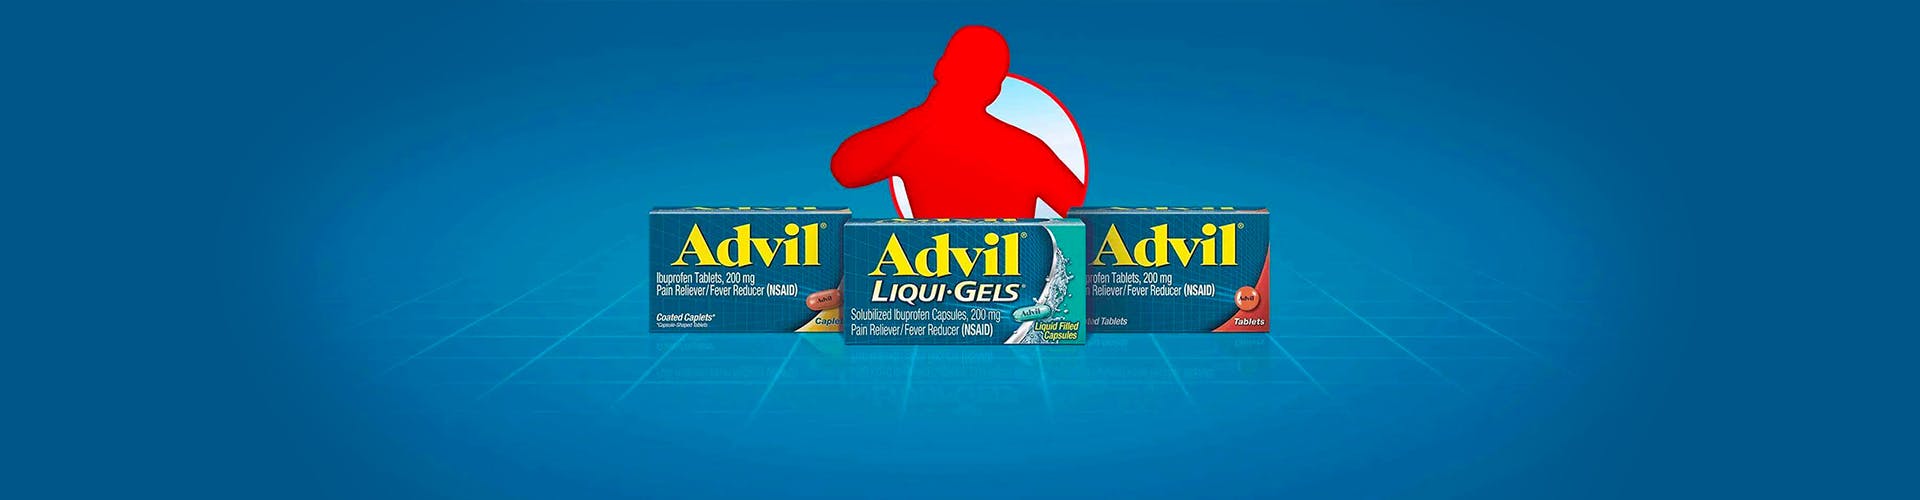 un banner de tres productos de Advil con una silueta roja sobre el fondo azul